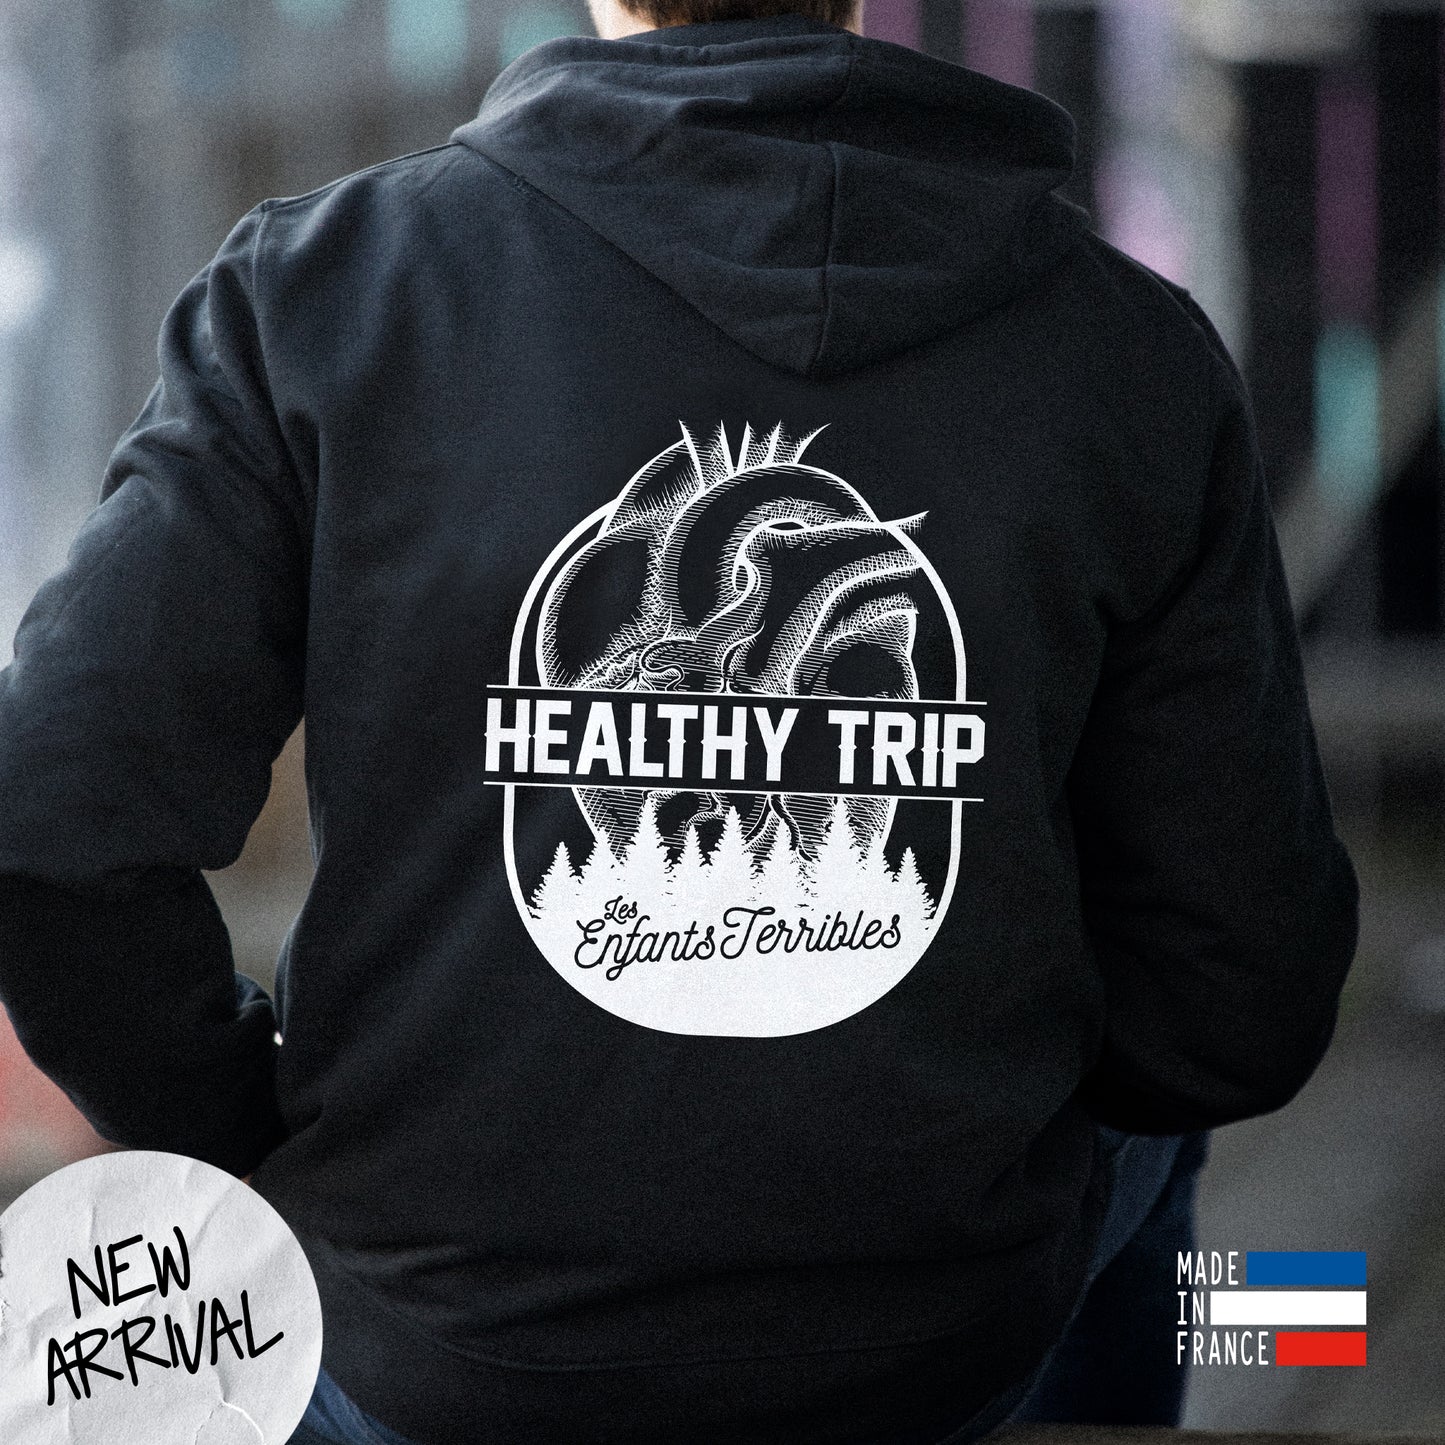 Sweat à capuche noir unisexe avec le message "Healthy trip".